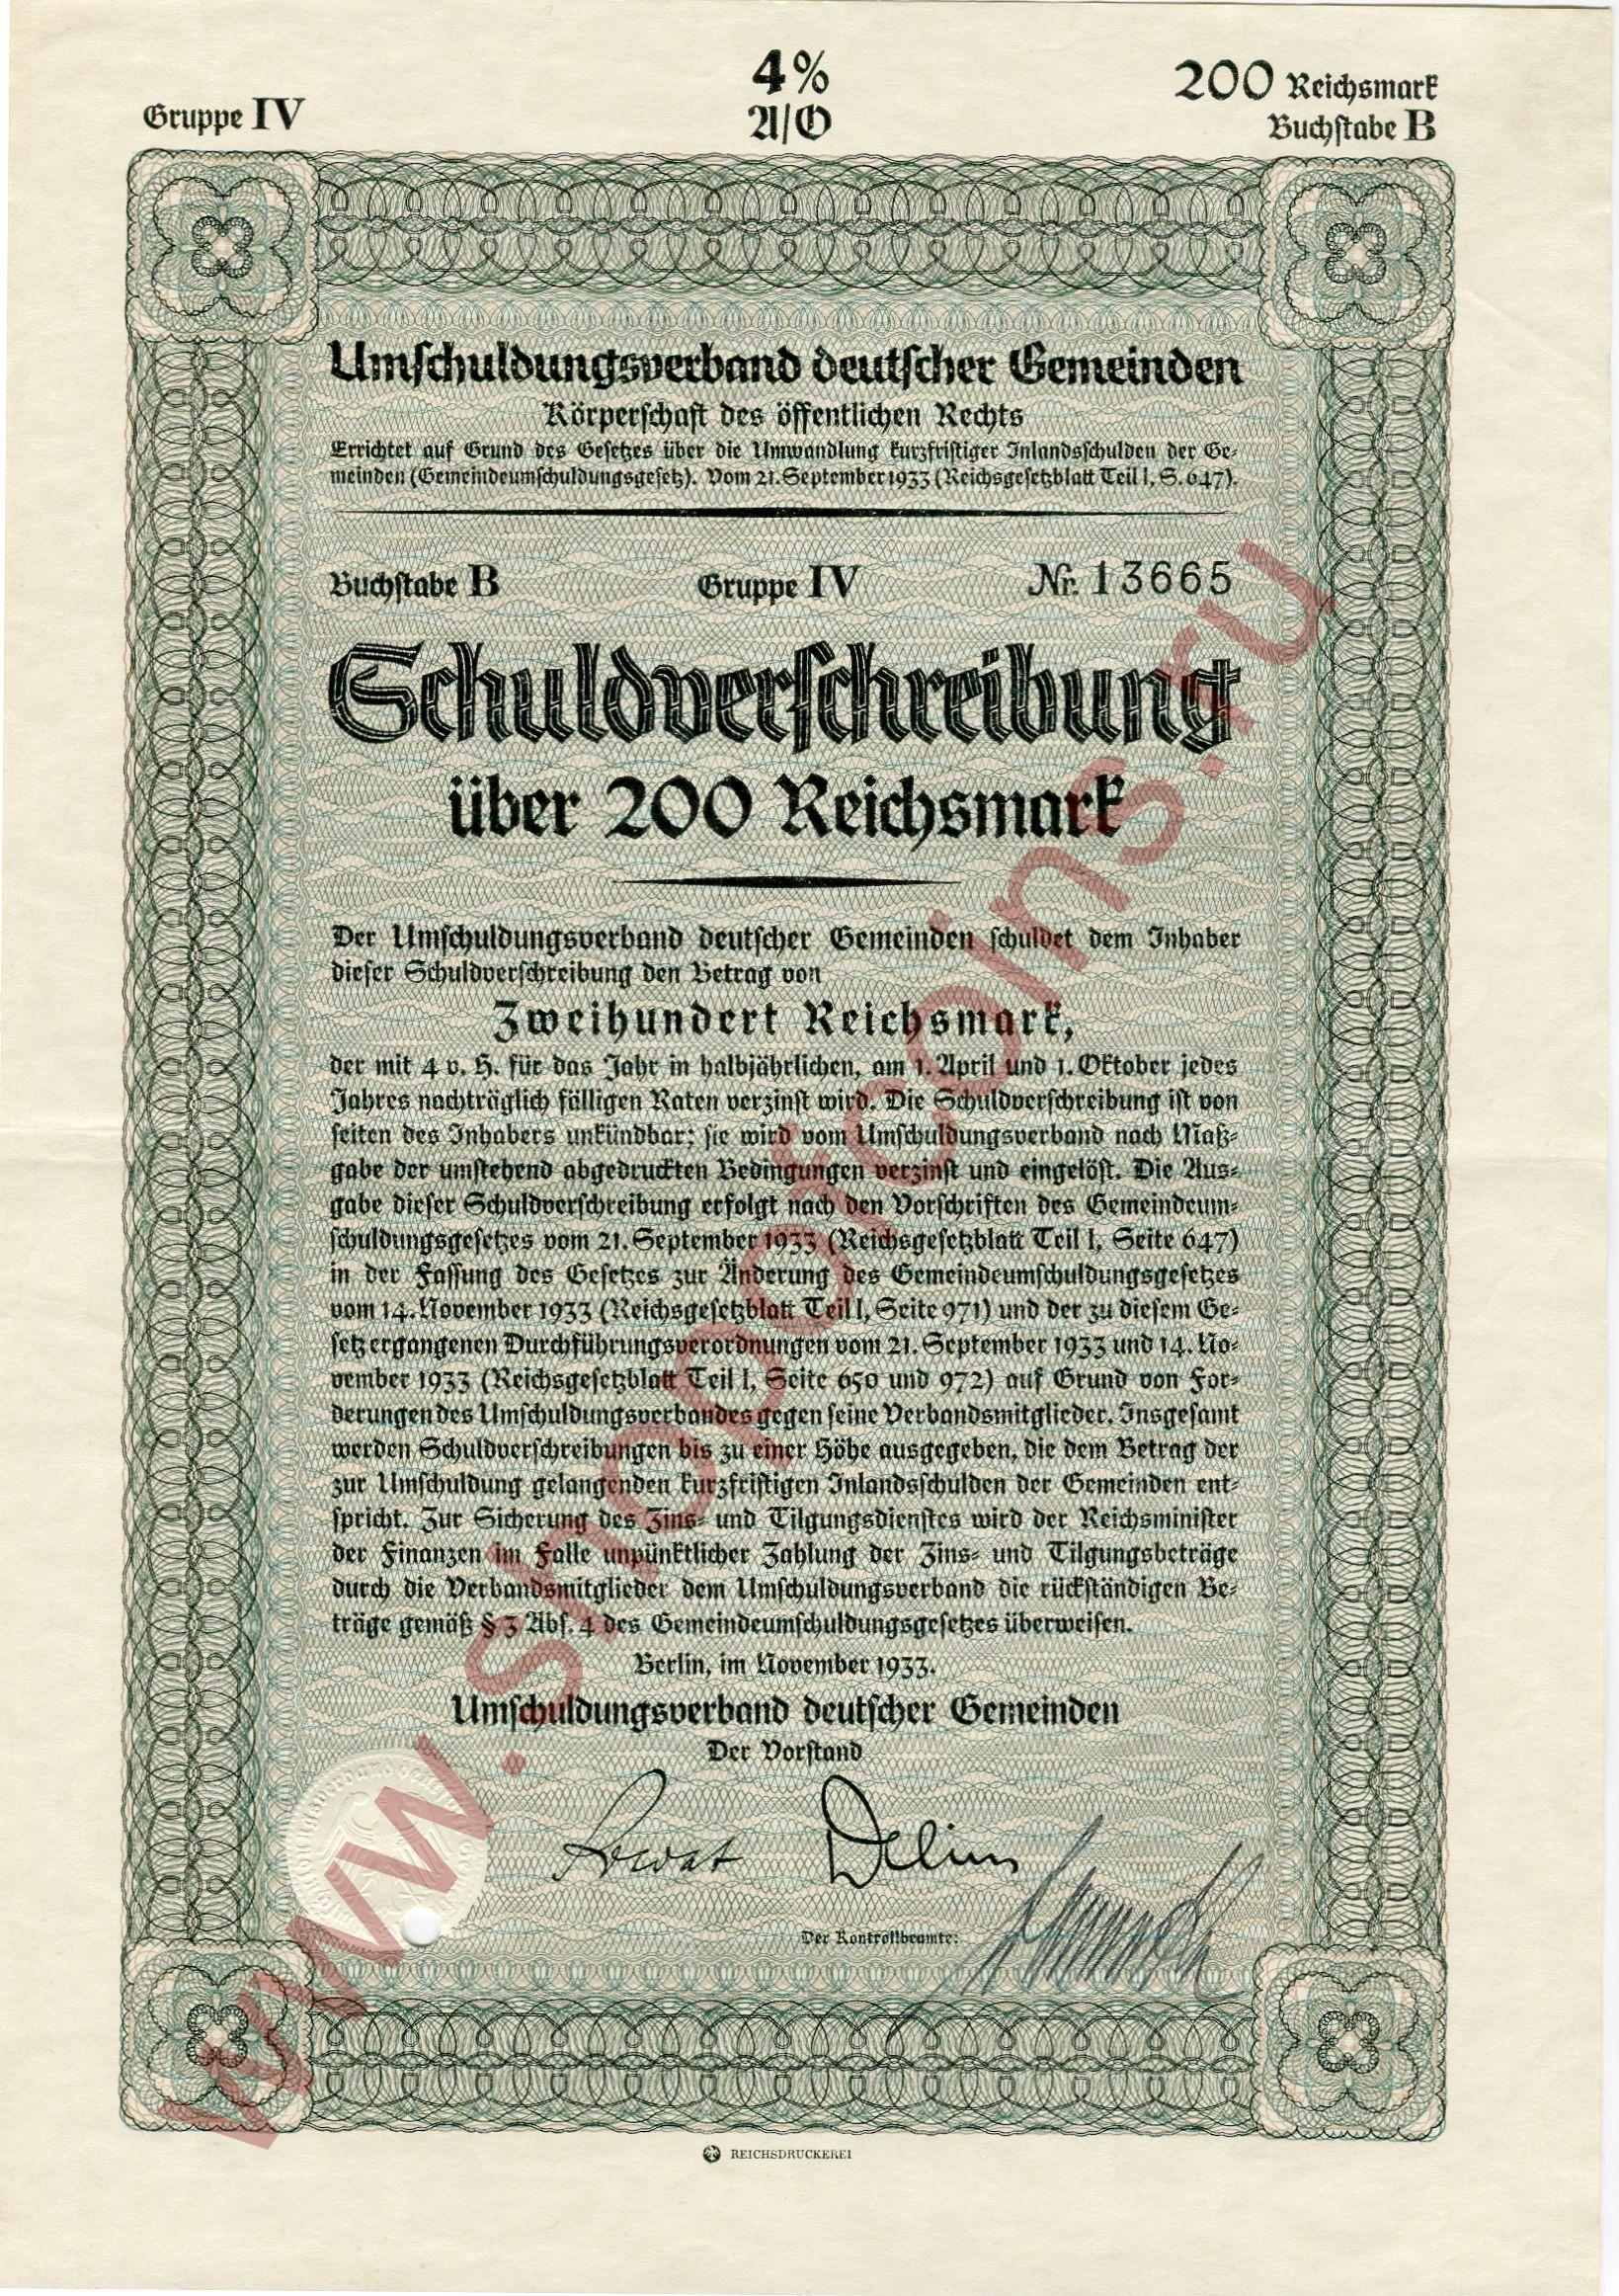 200  1933 - Umschuldungsverband deutscher Gemeinden ( B)